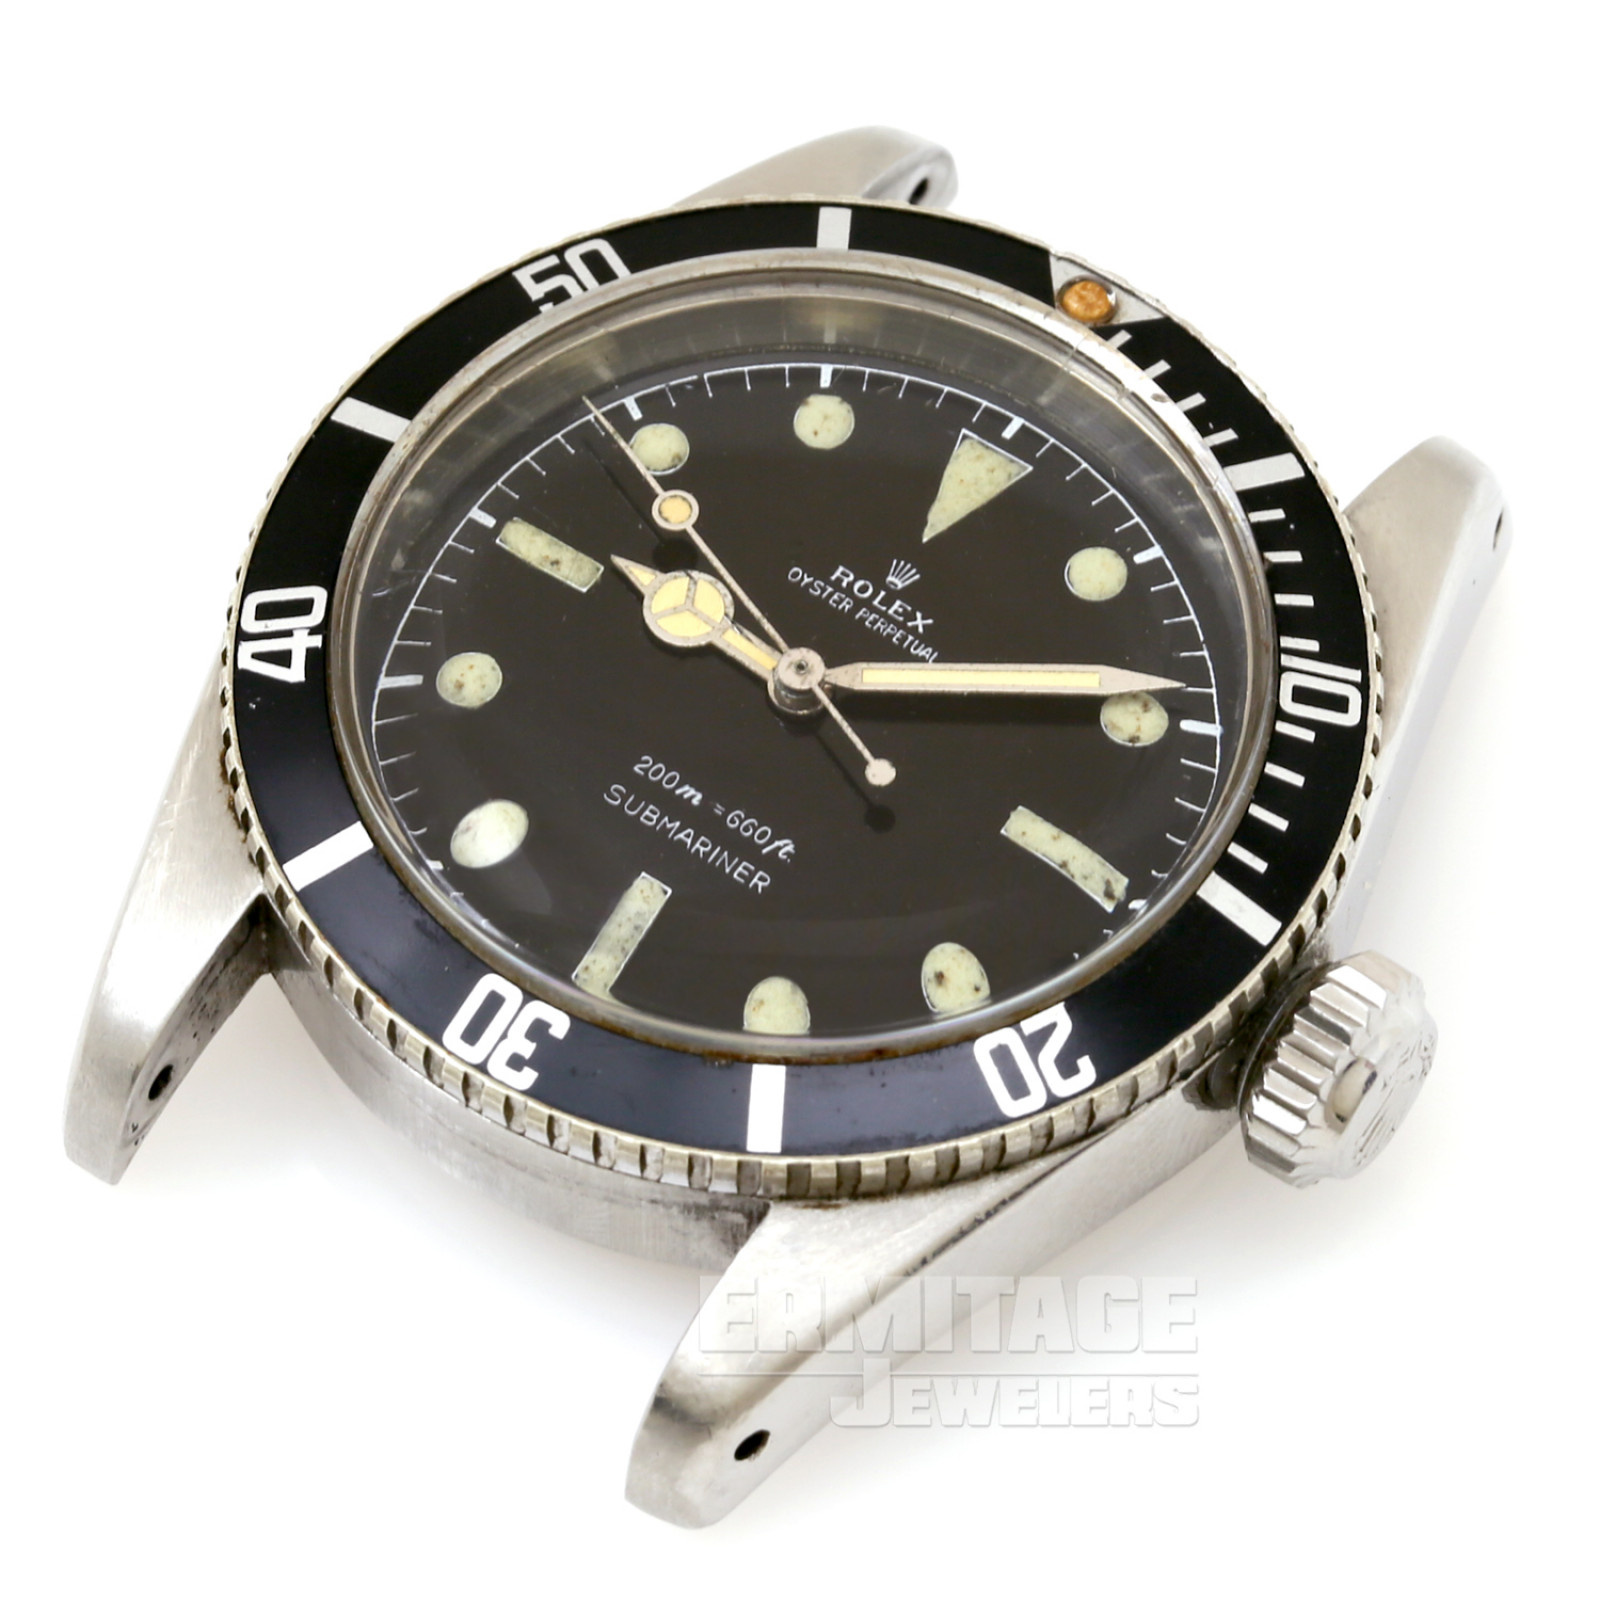 Vintage Rolex Submariner 6538